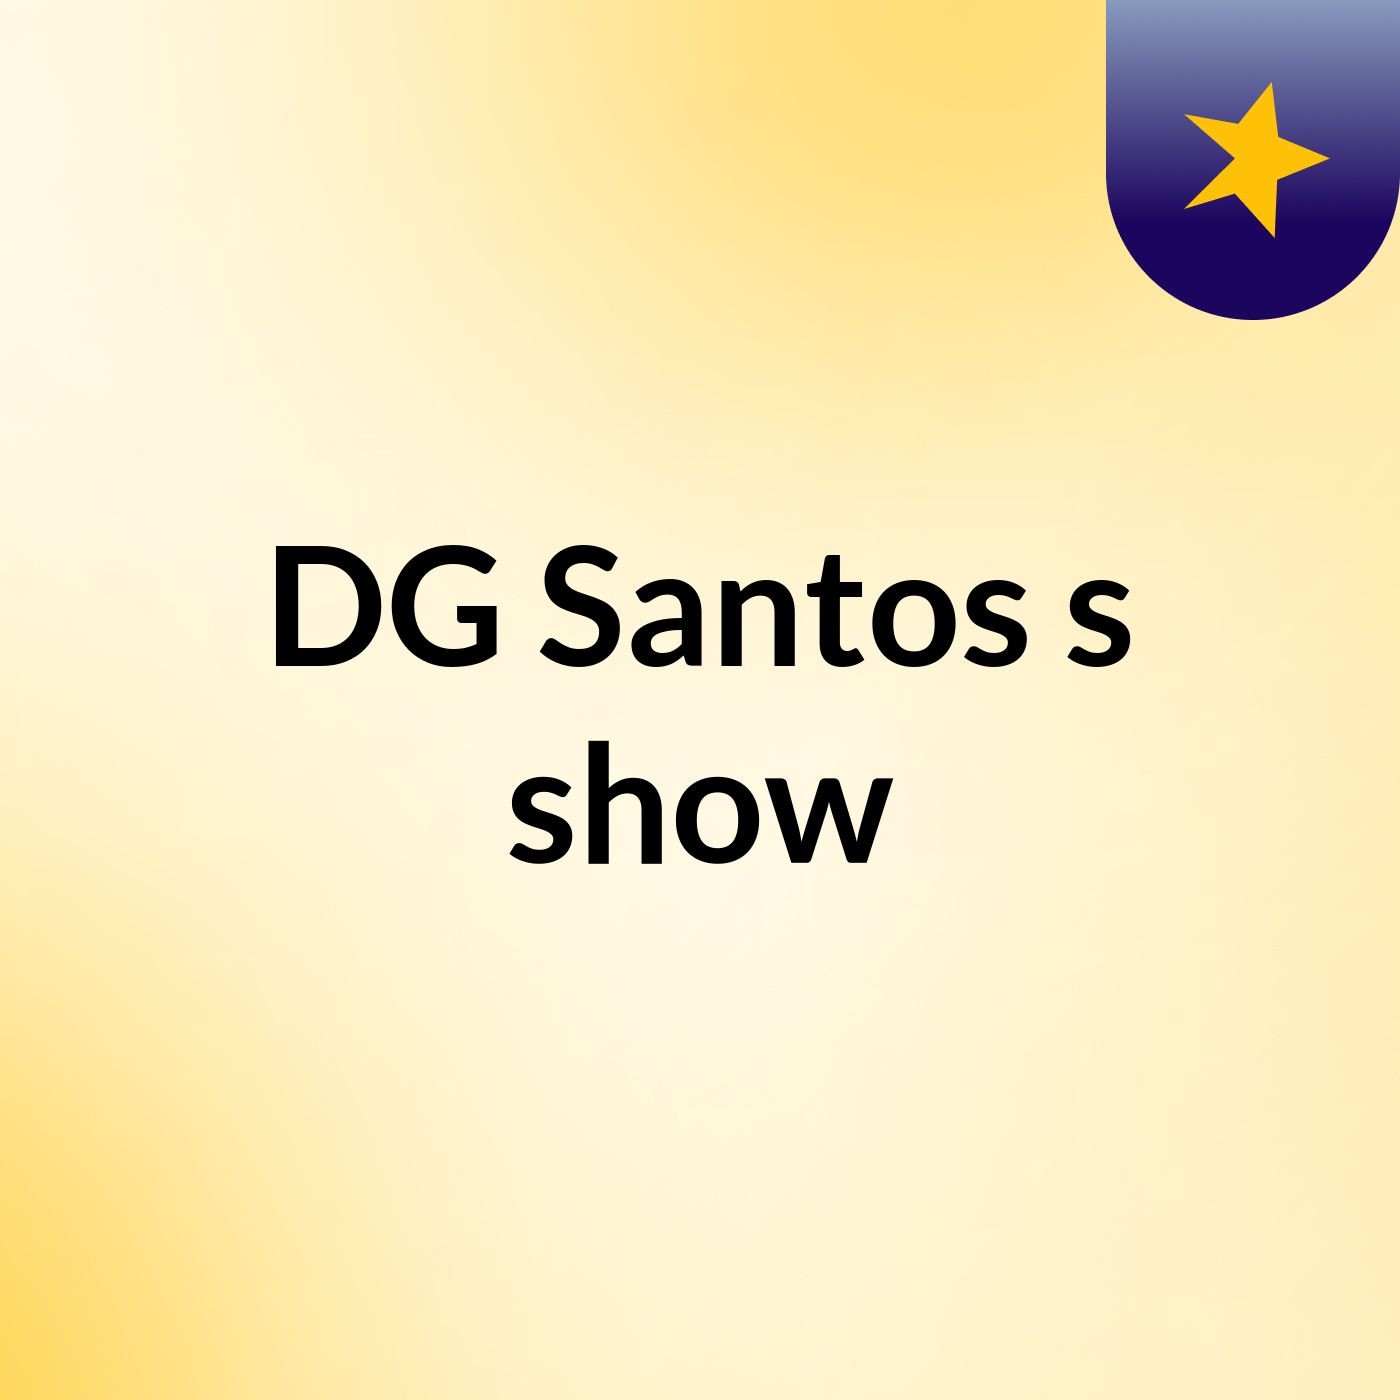 DG Santos's show